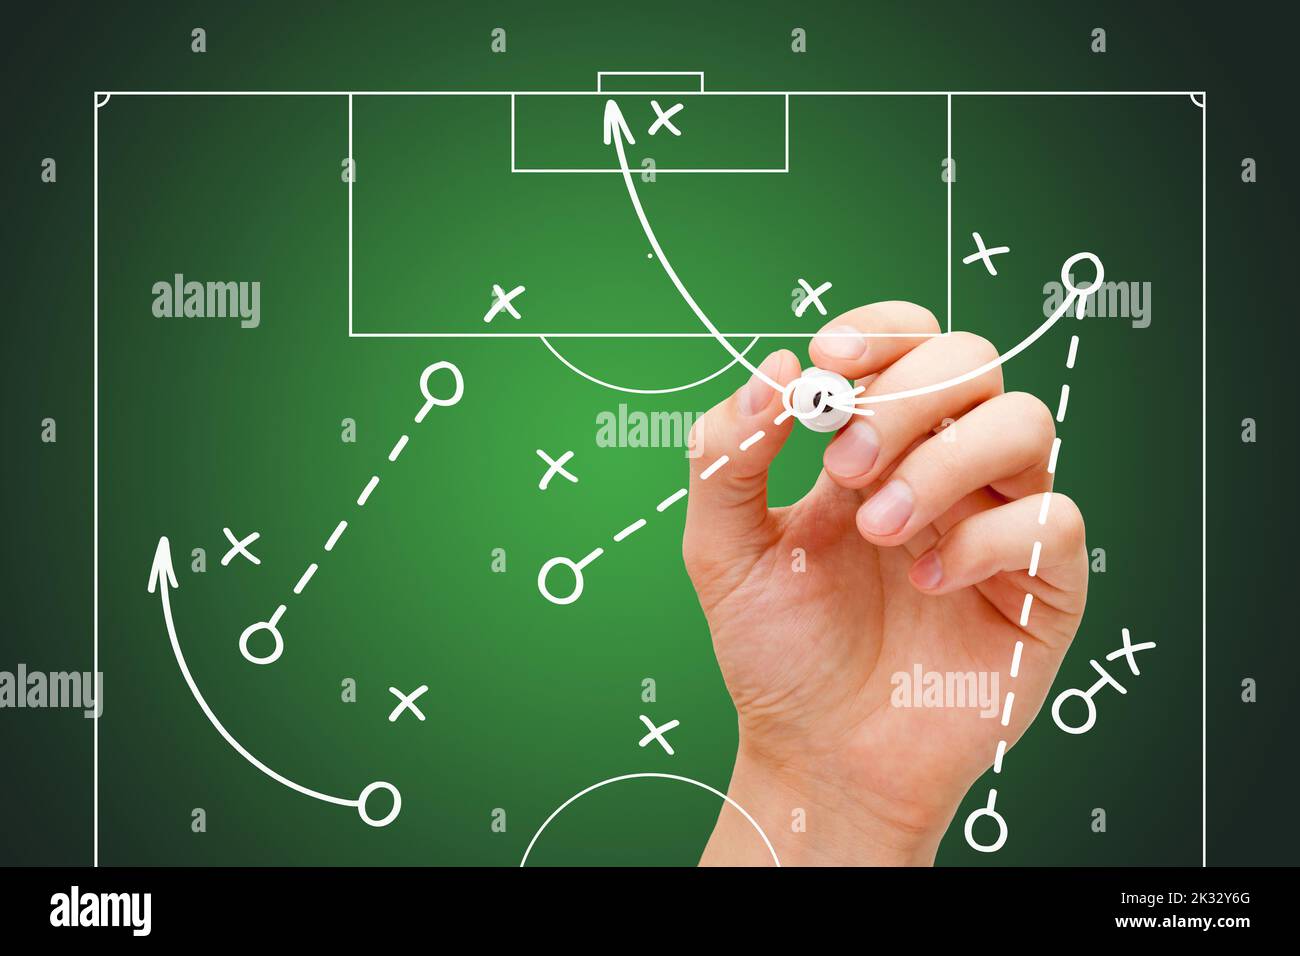 Entrenador de fútbol de fútbol de dibujo de juego de tableta, estrategia y tácticas con marcador blanco en el tablero transparente de limpieza. Foto de stock